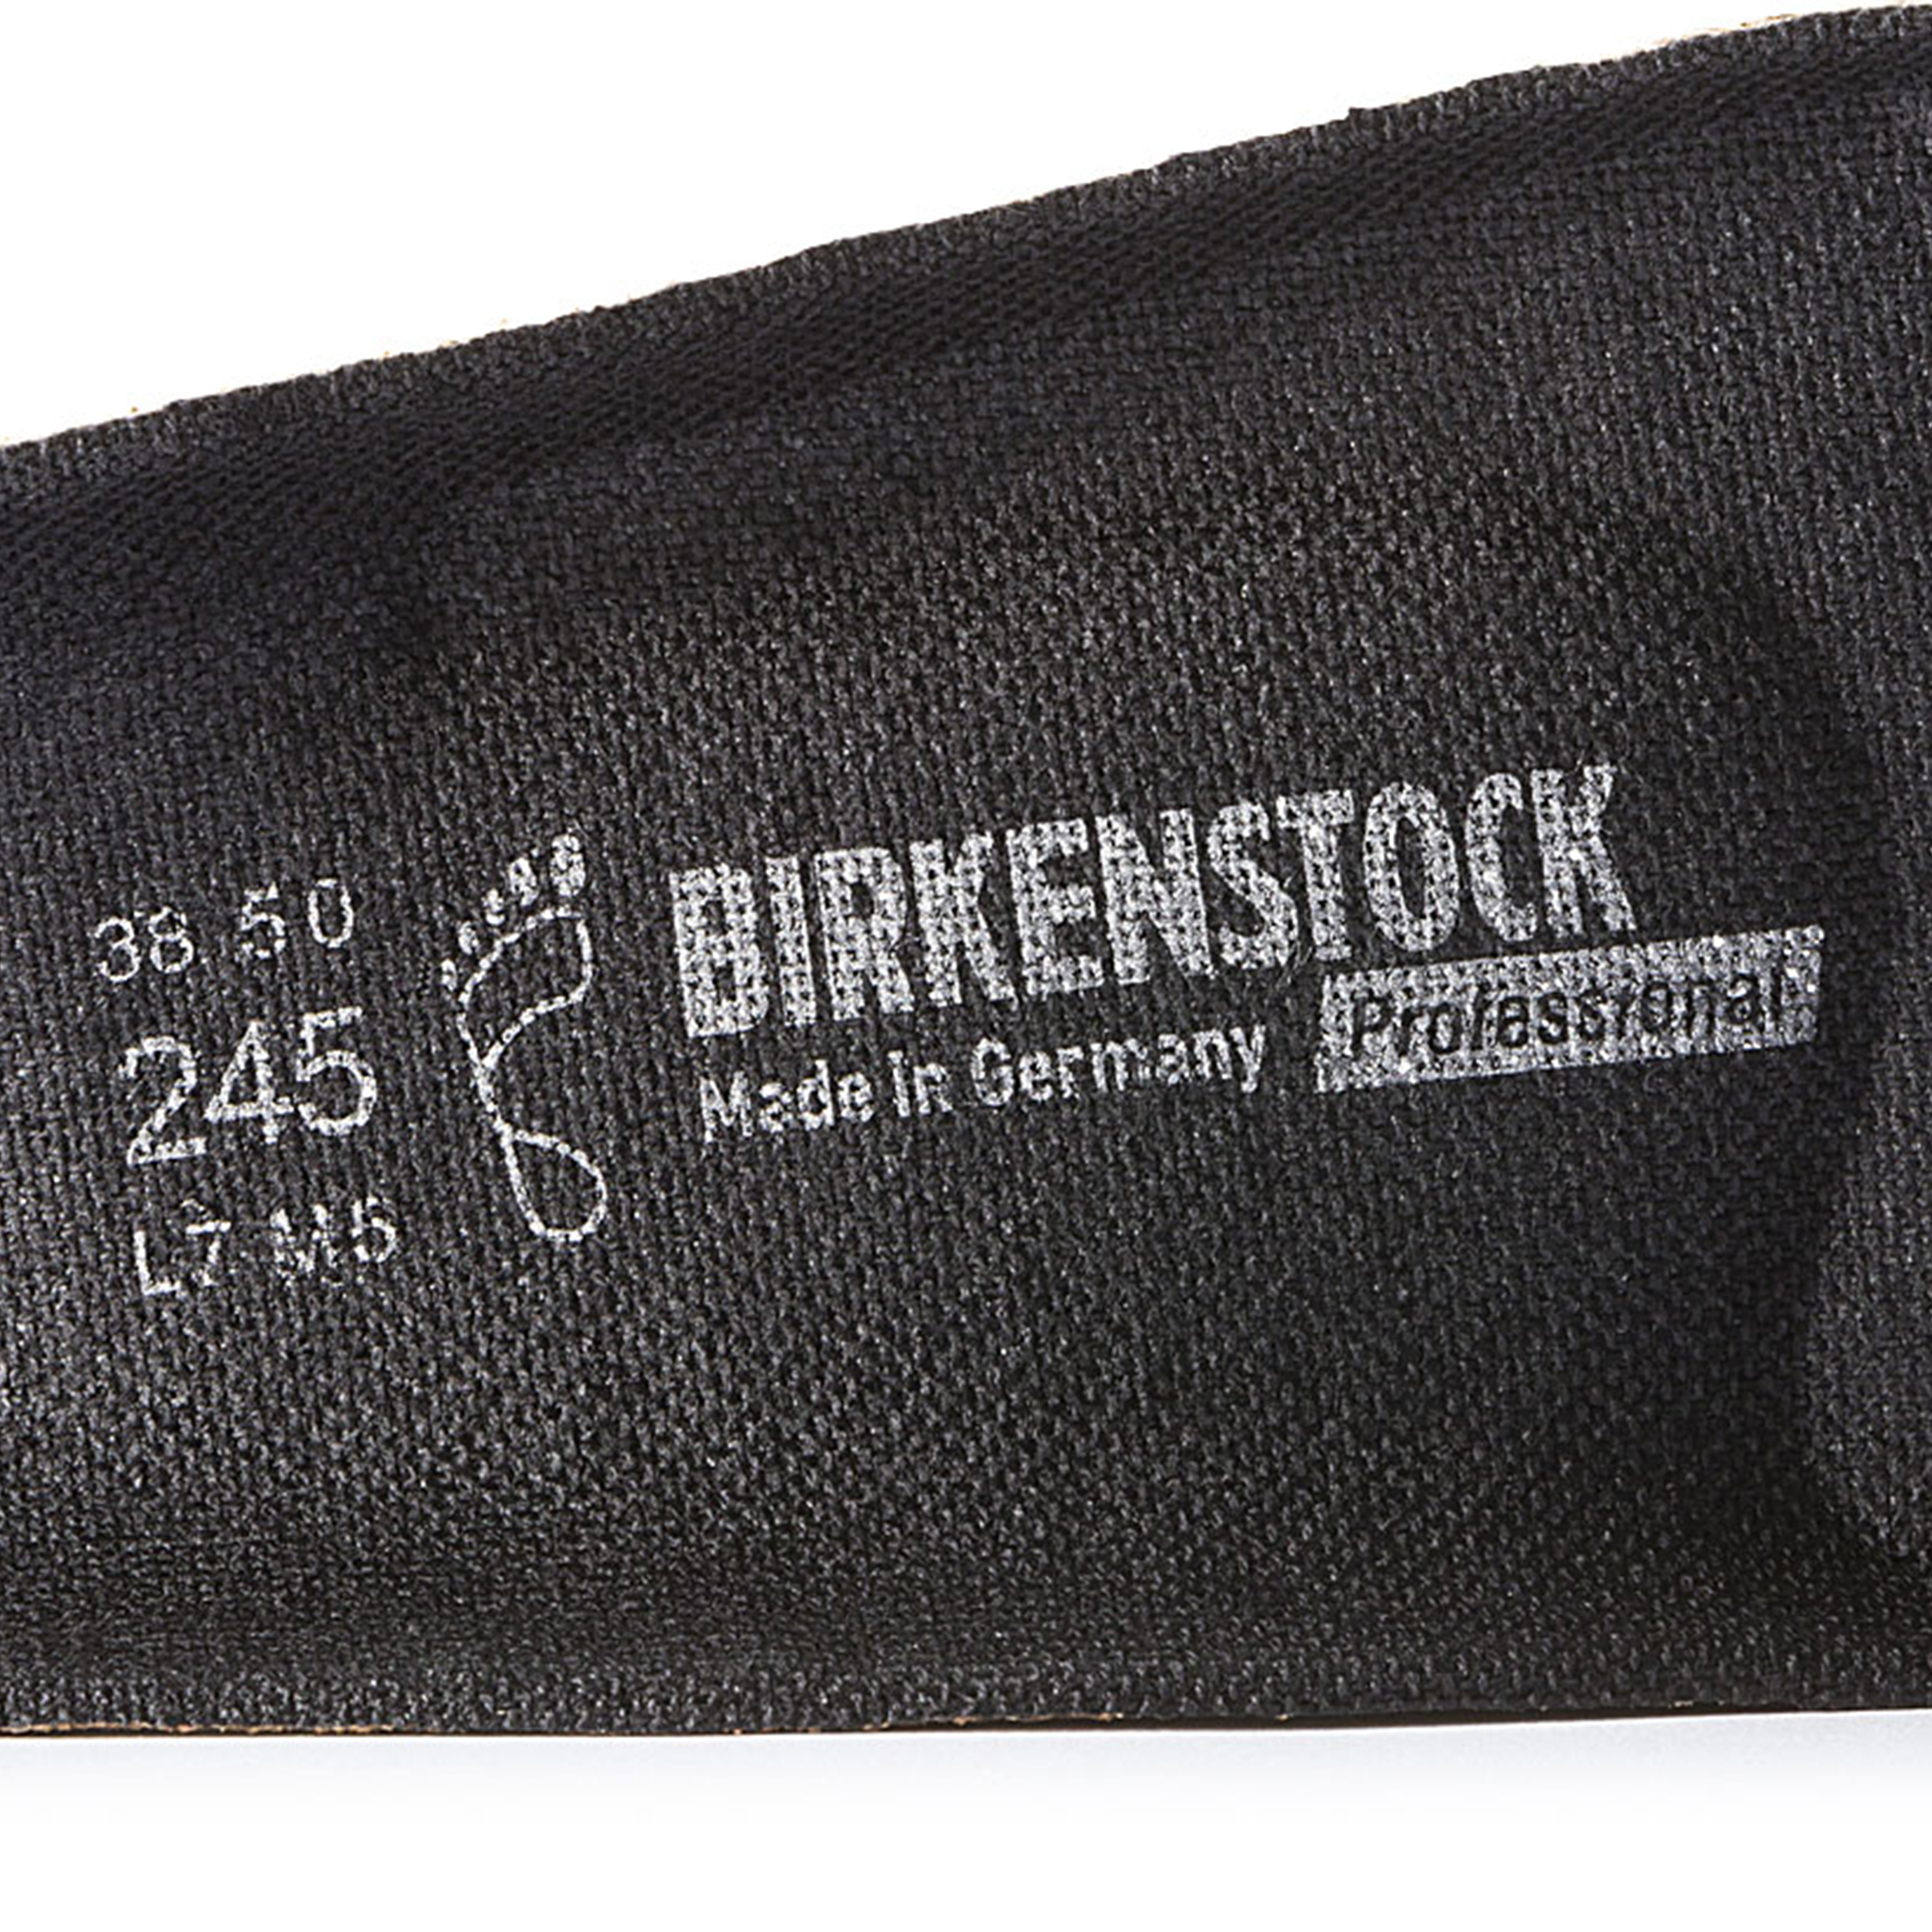 birkenstock cork replacement footbed